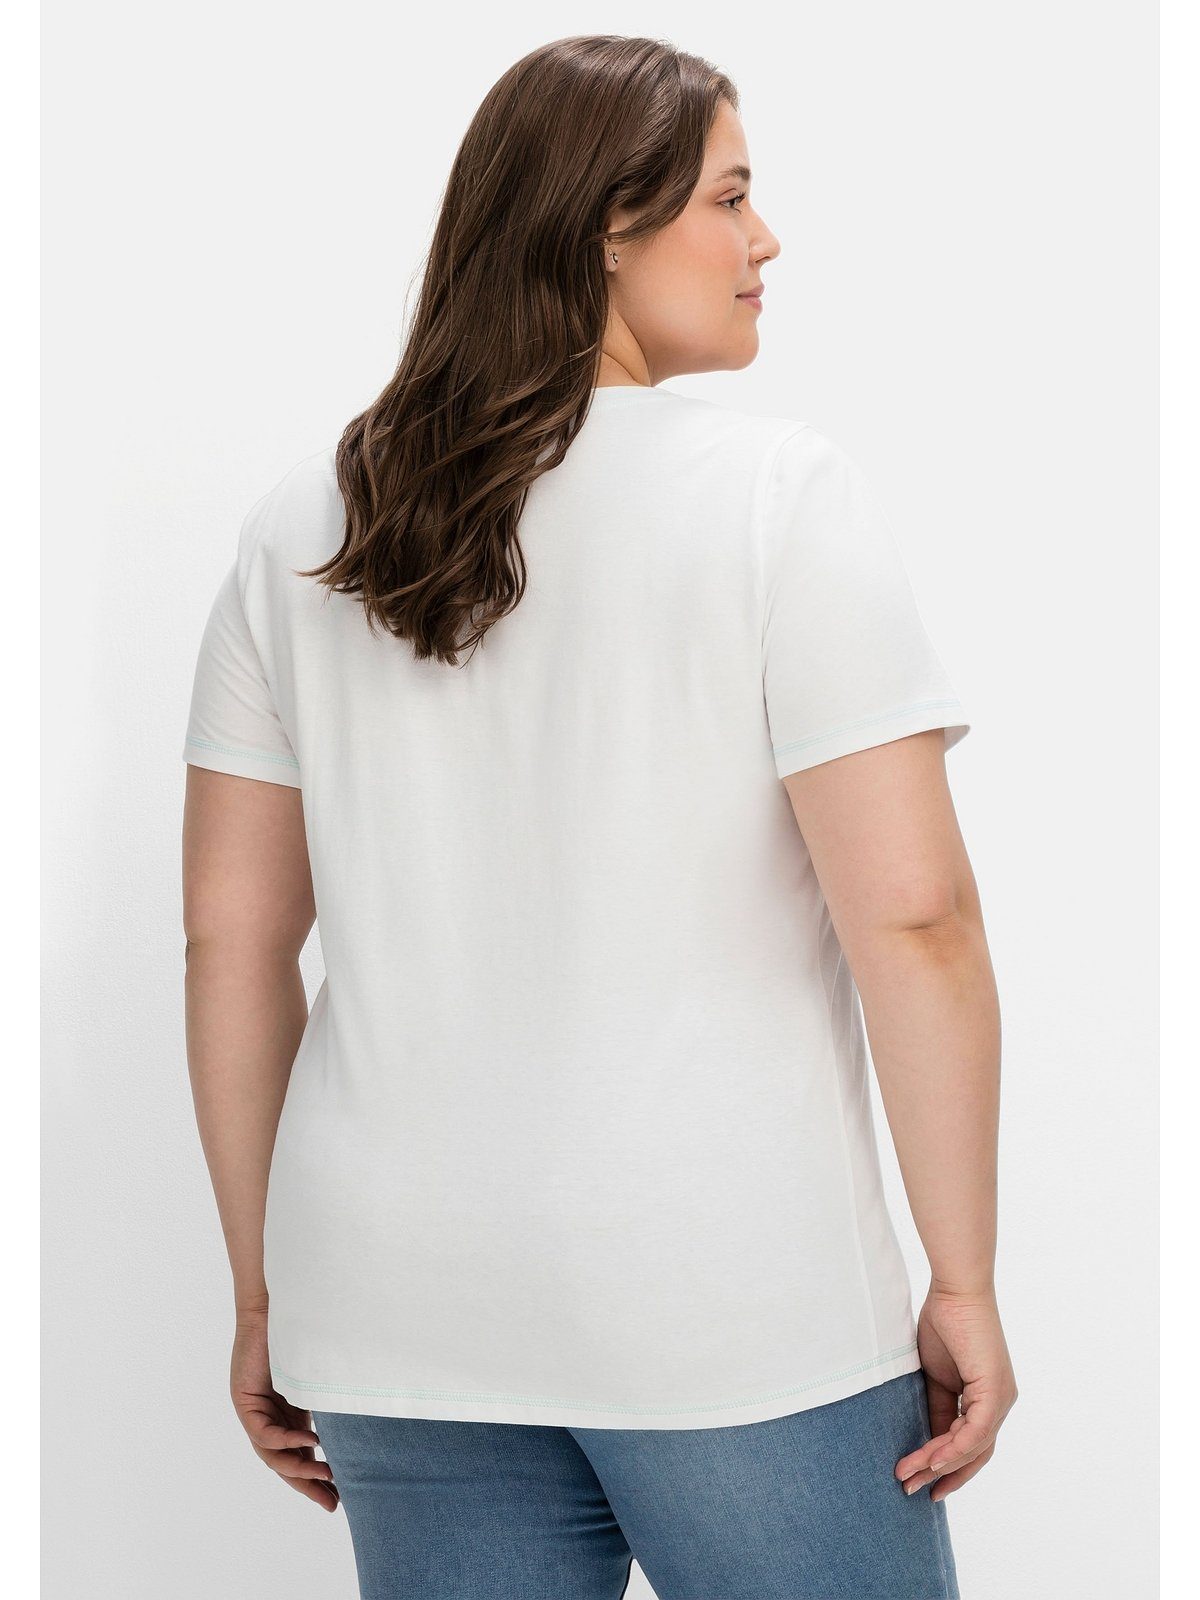 leicht T-Shirt Große bedruckt mit tailliert Sheego Wordingprint, weiß Größen